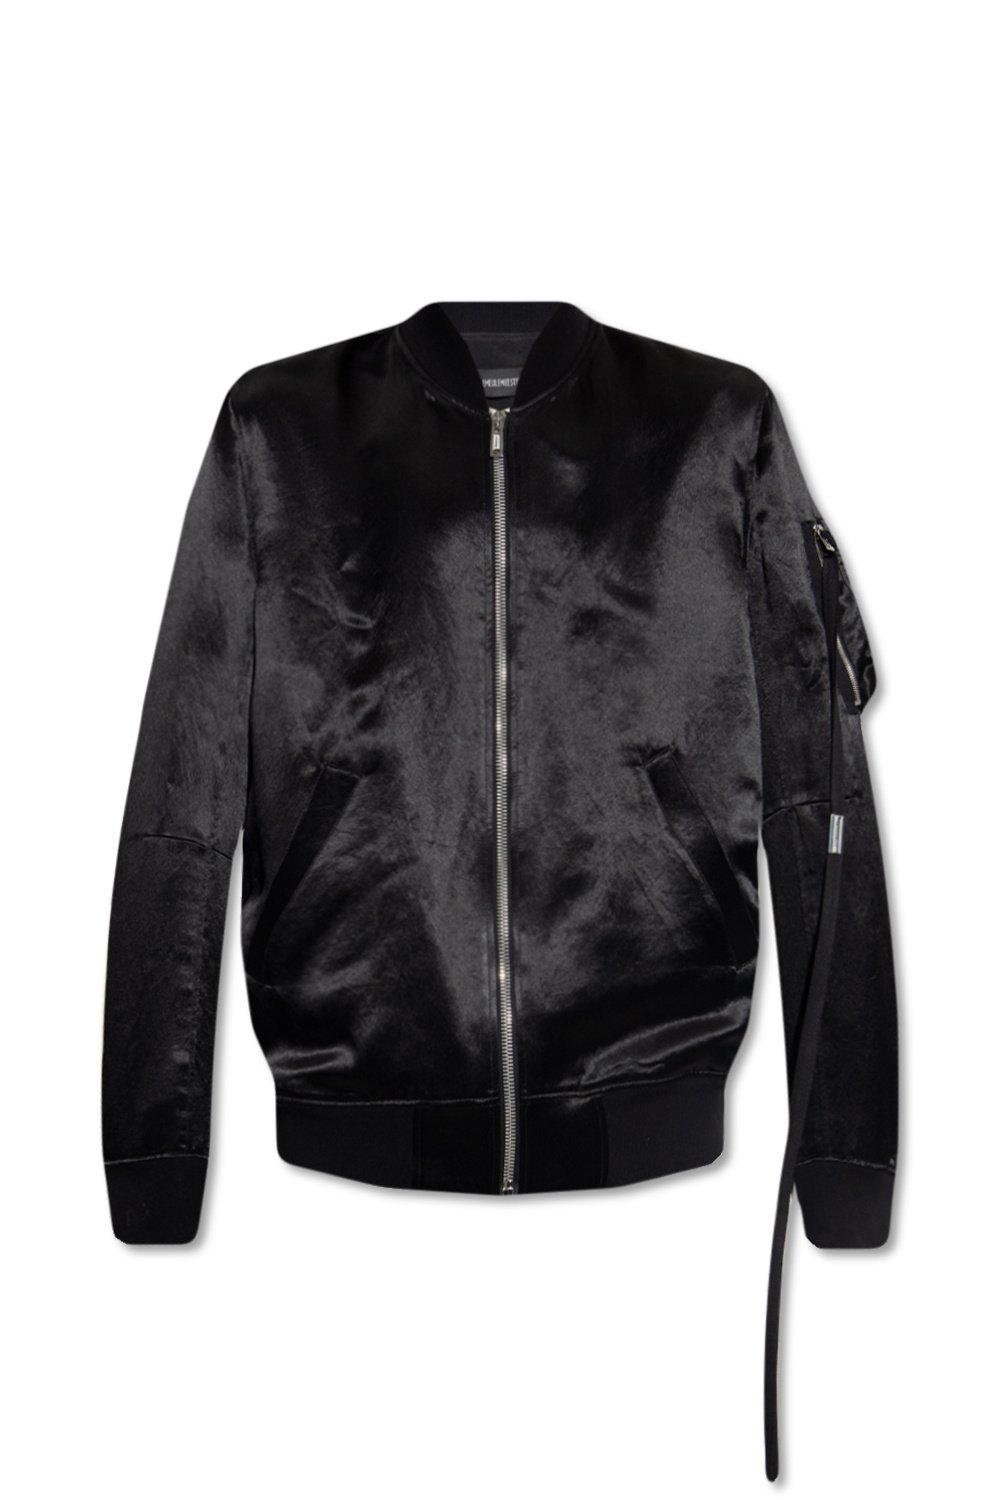 Ann Demeulemeester ‘Dries’ bomber jacket | Men's Clothing | Vitkac